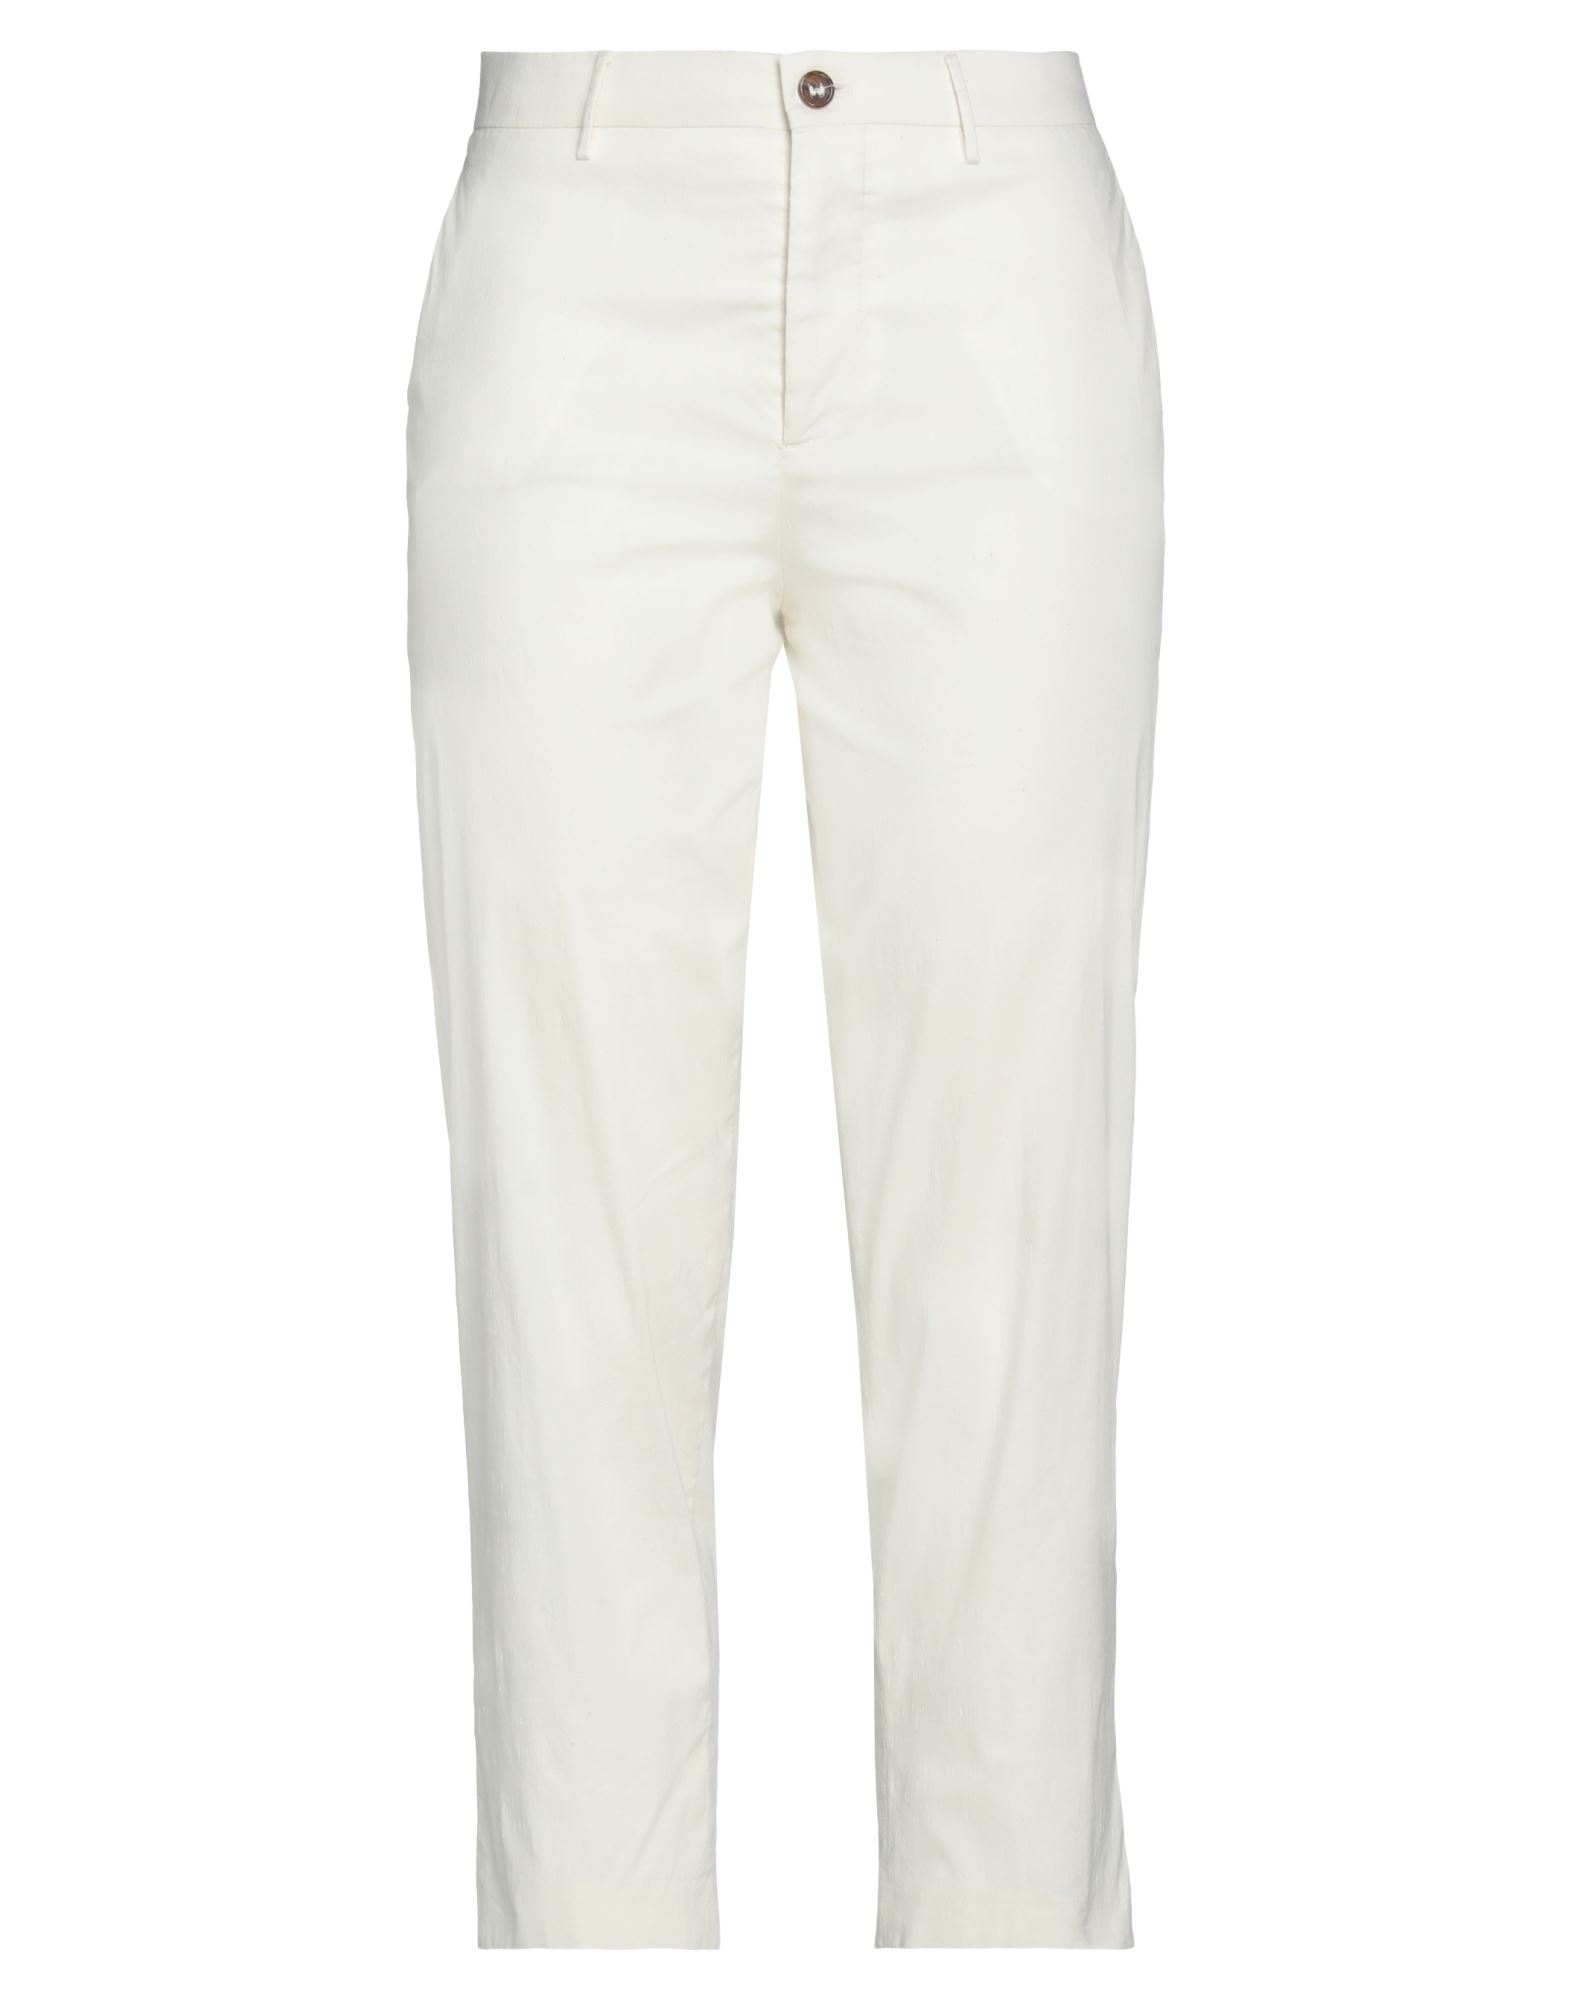 Berwich Pants In White